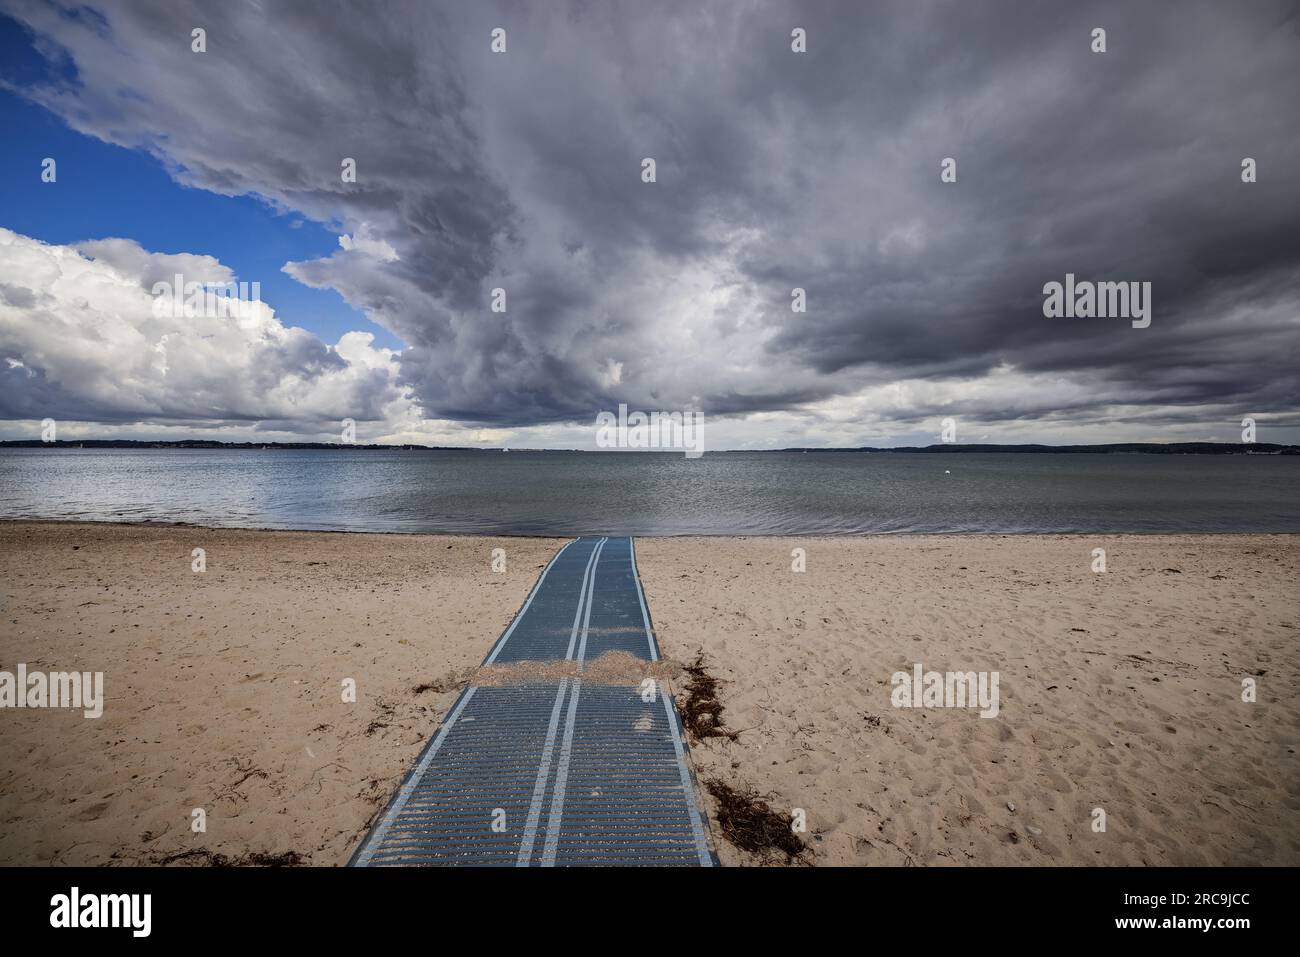 Dramatische Gewitterwolken über dem menschenleeren Strand von Holnis/Glücksburg. Eine Kunststoffbahn für Rollstuhlfahrer führt zum Flutsaum Foto Stock